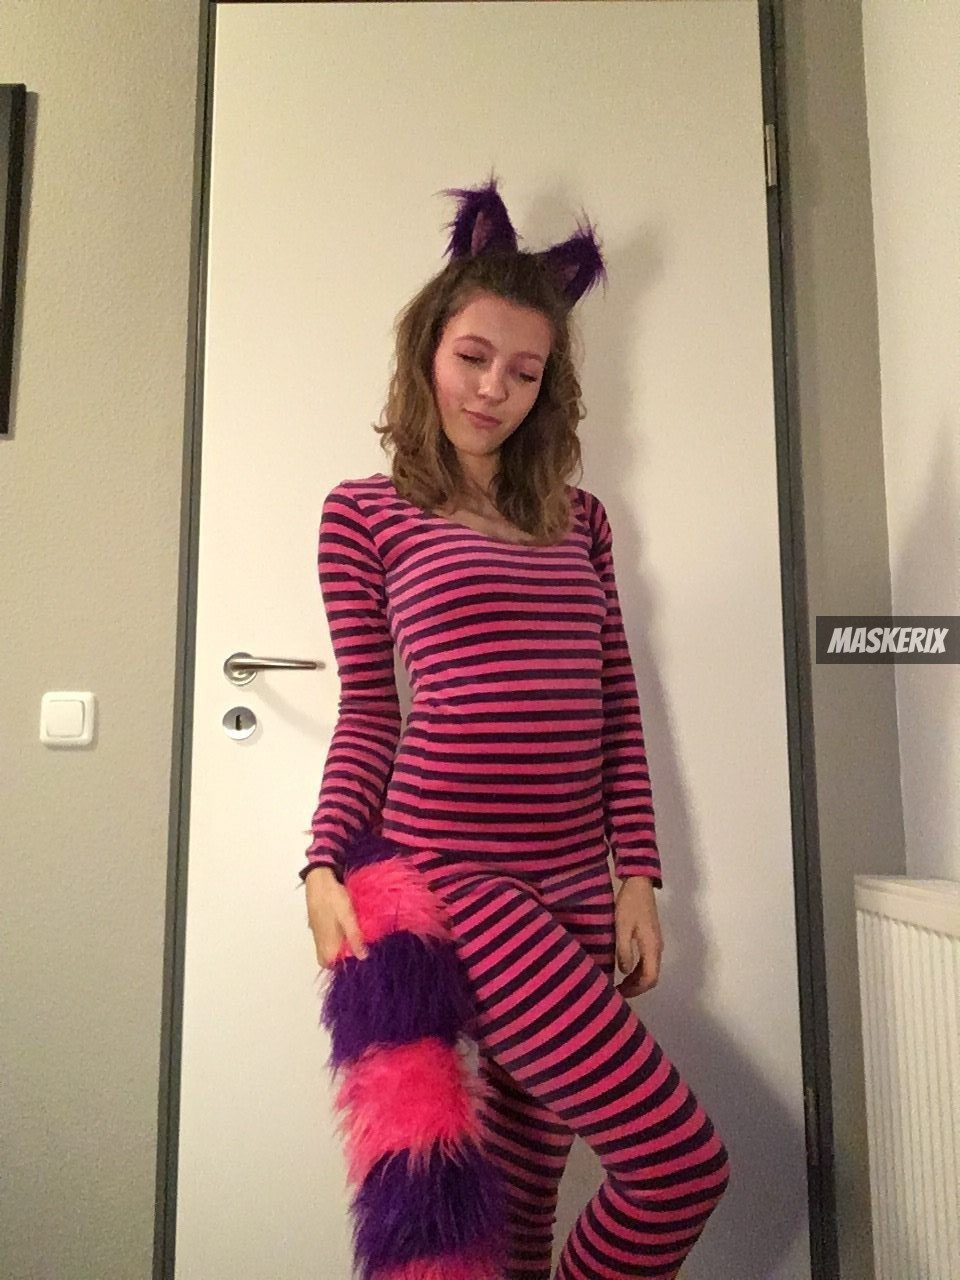 DIY Cheshire Cat Costume
 DIY Alice in Wonderland Cheshire Cat Halloween Costume